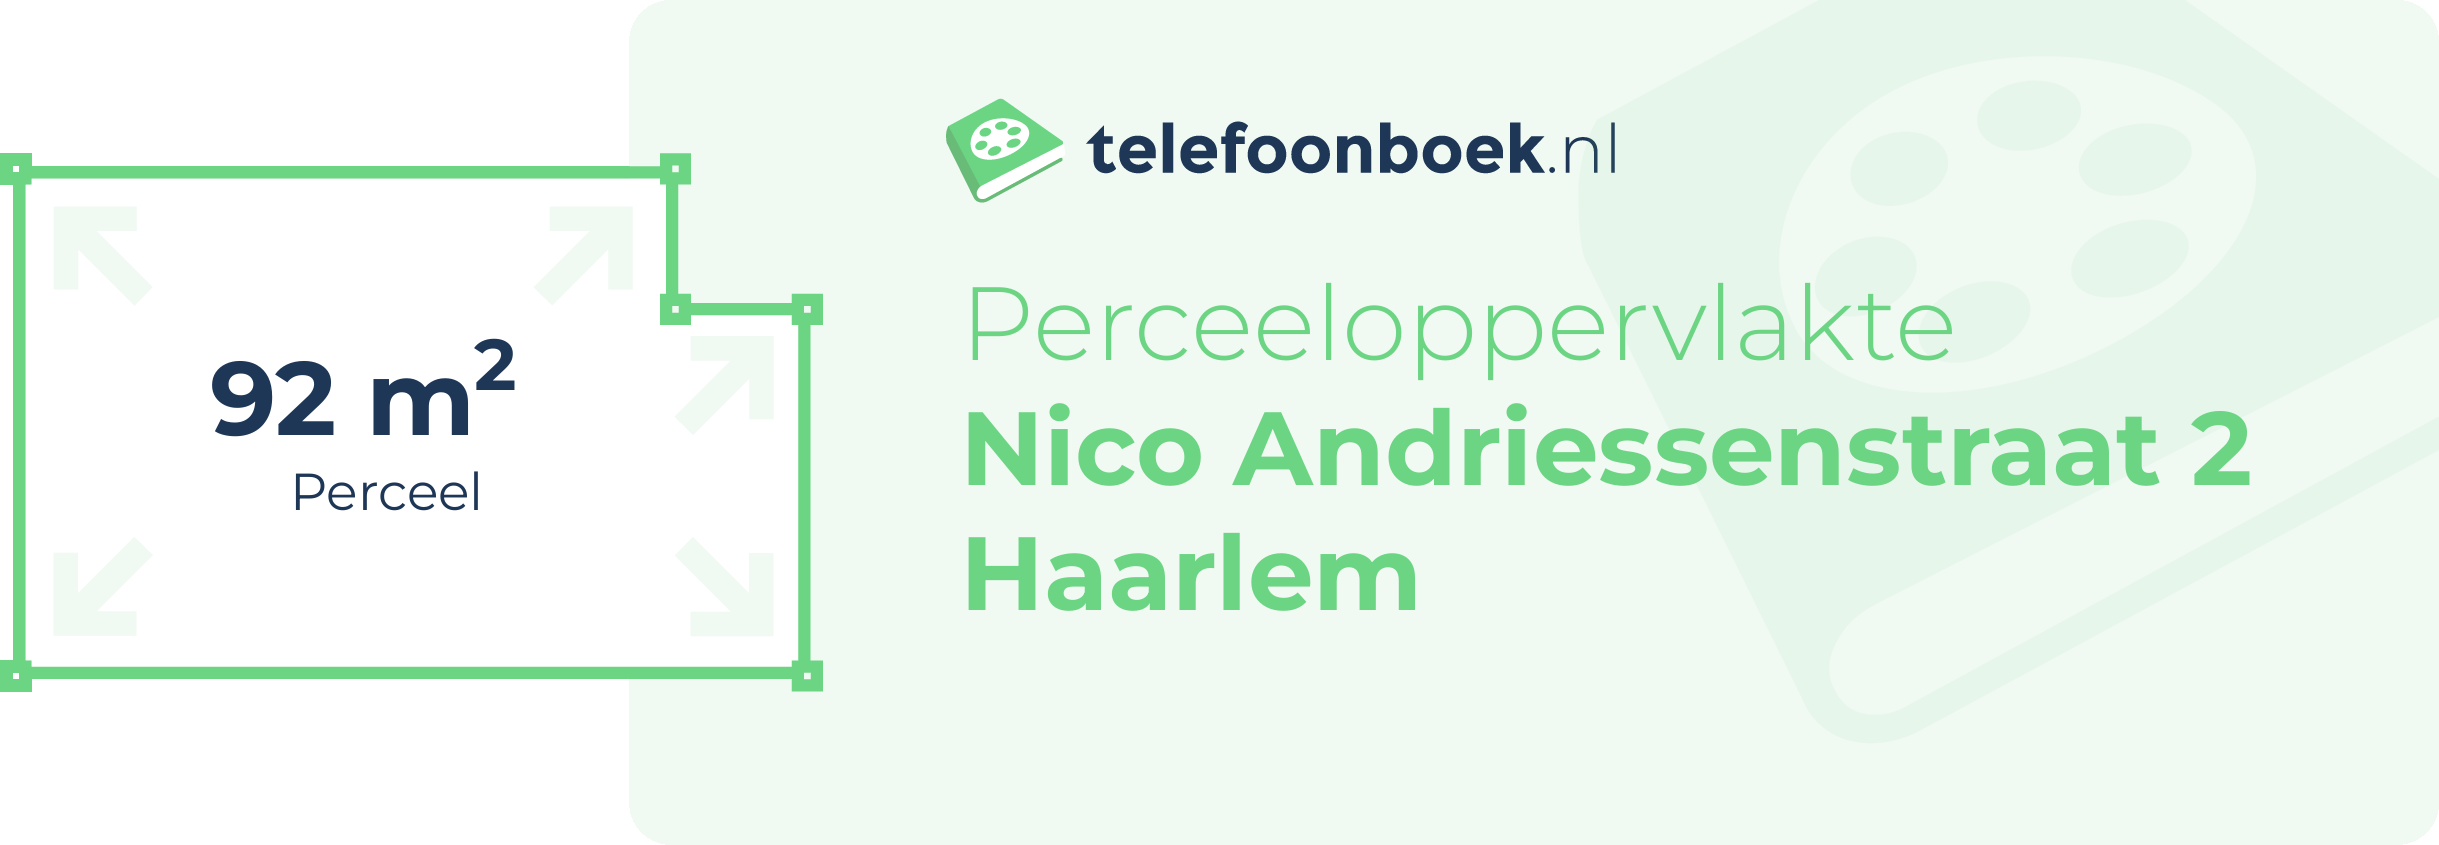 Perceeloppervlakte Nico Andriessenstraat 2 Haarlem